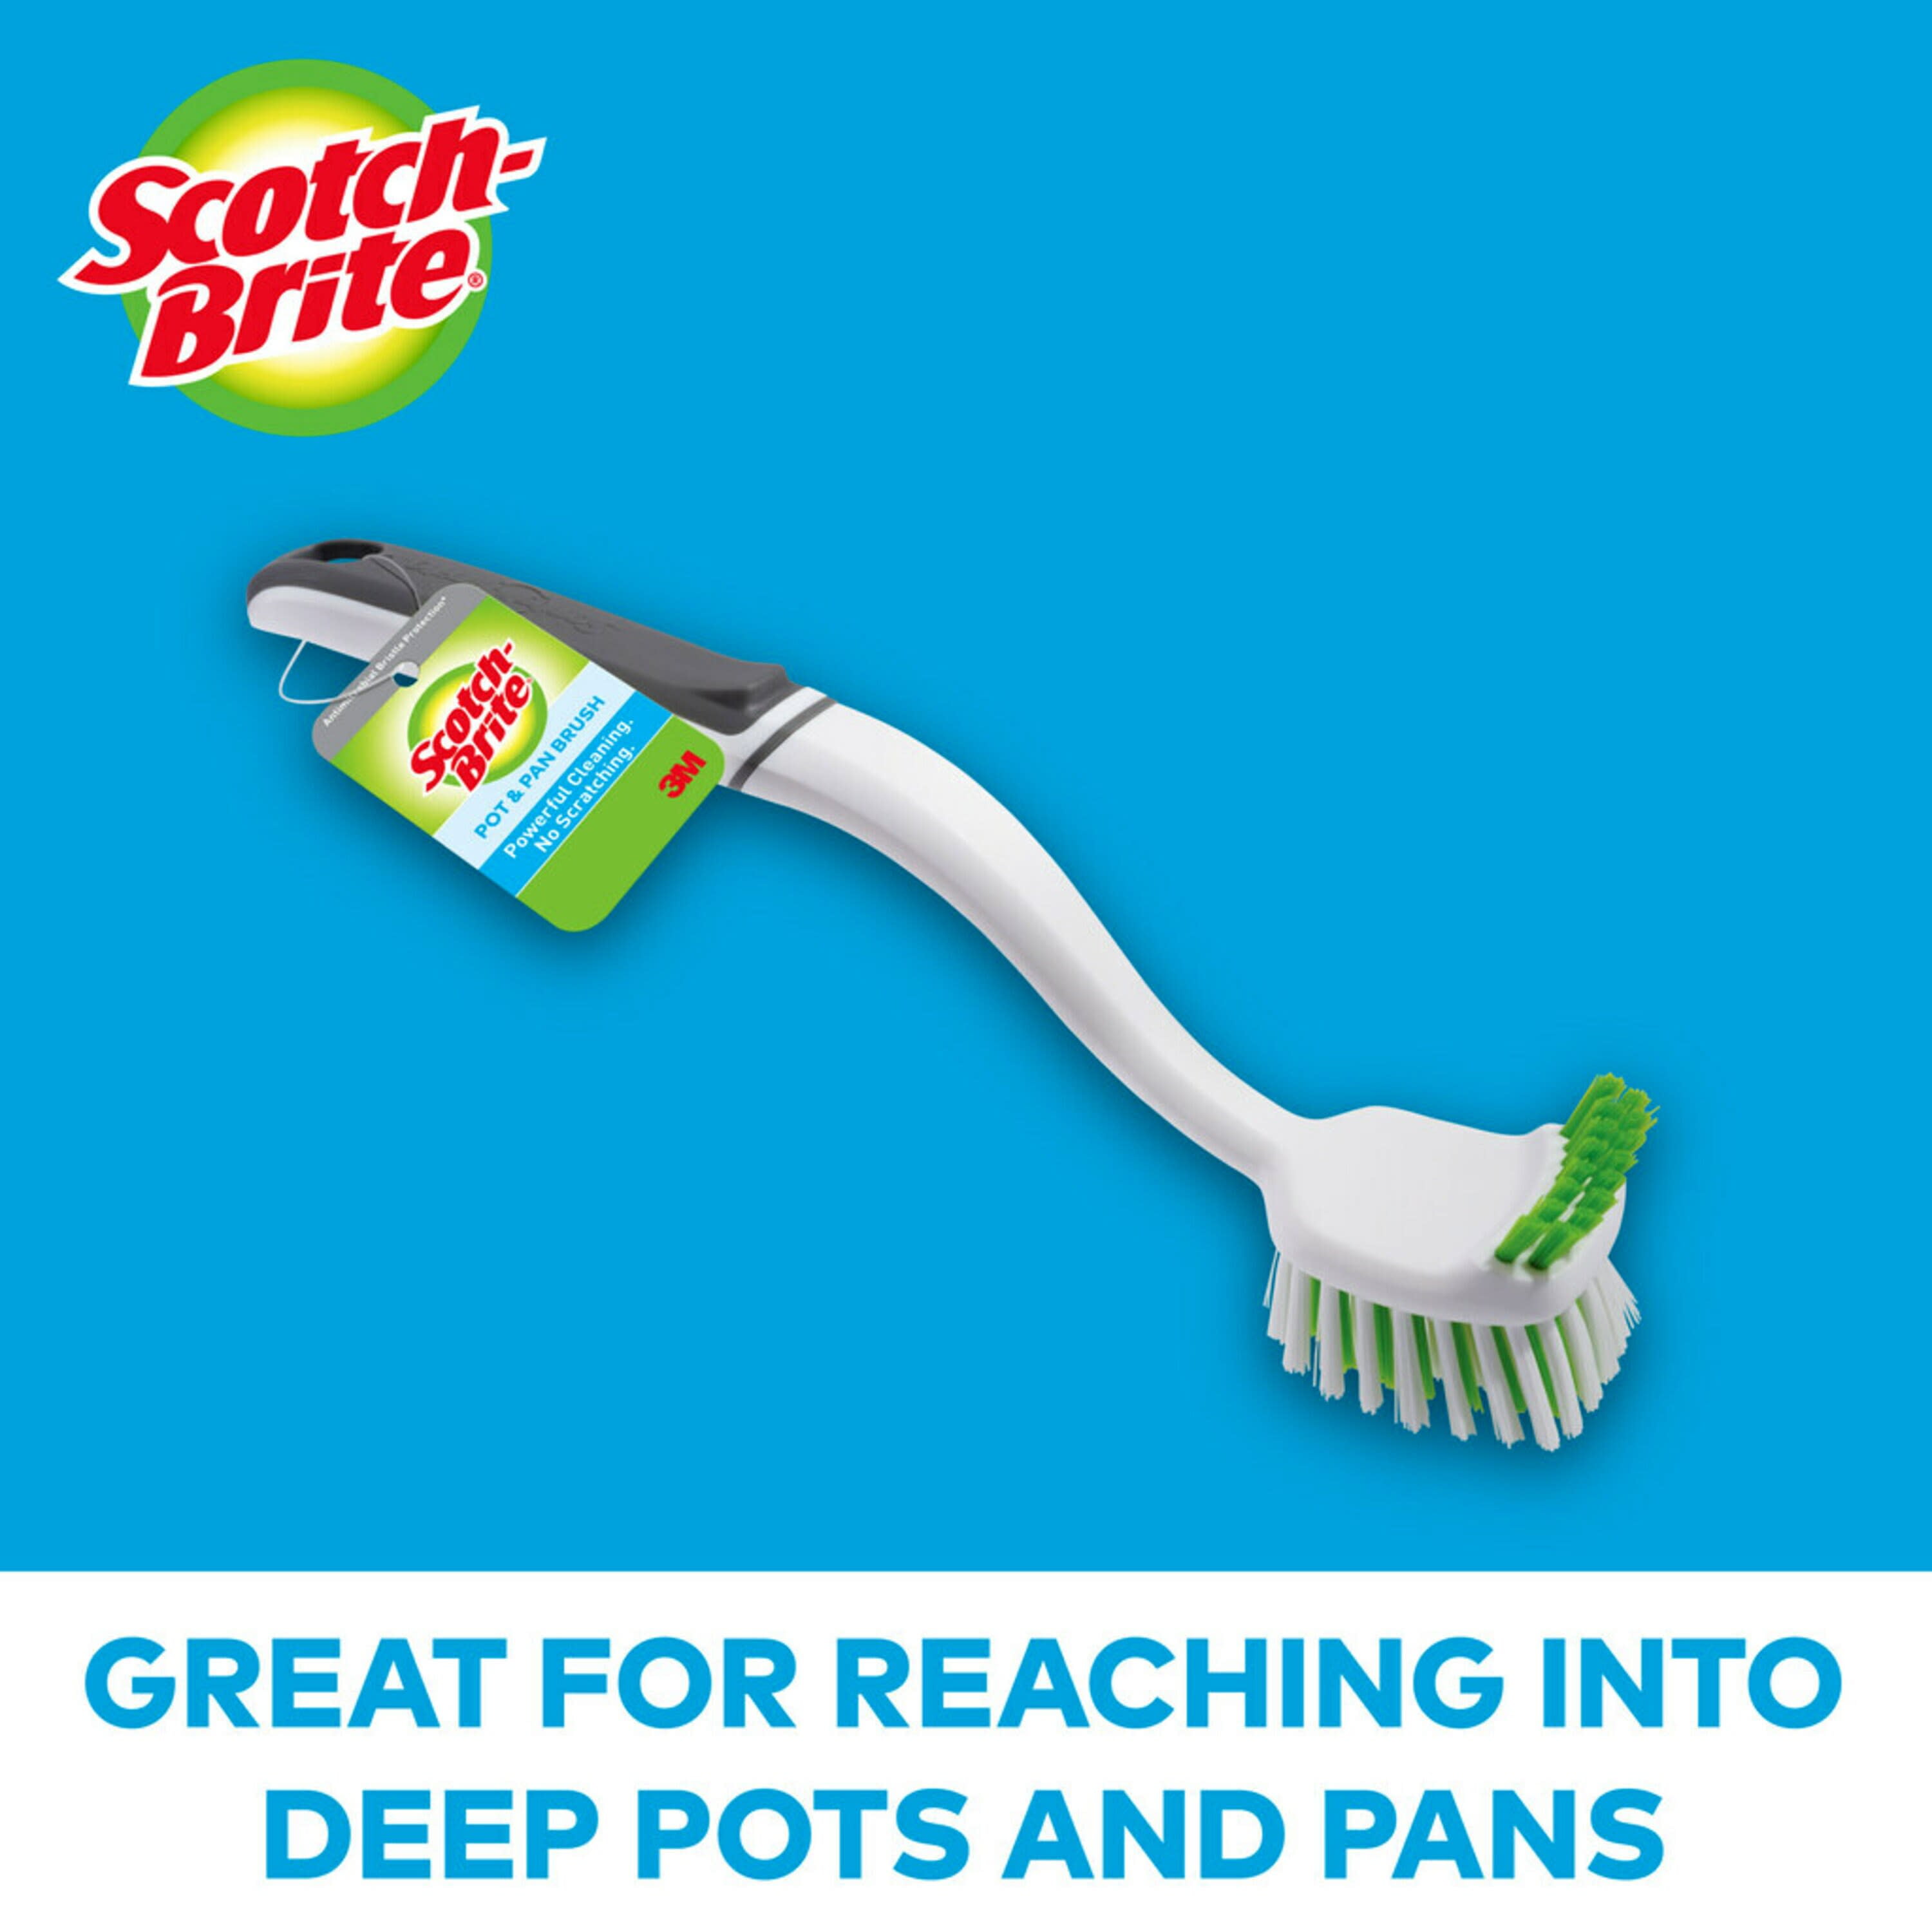 Scotch-Brite® Soap Dispensing Brush